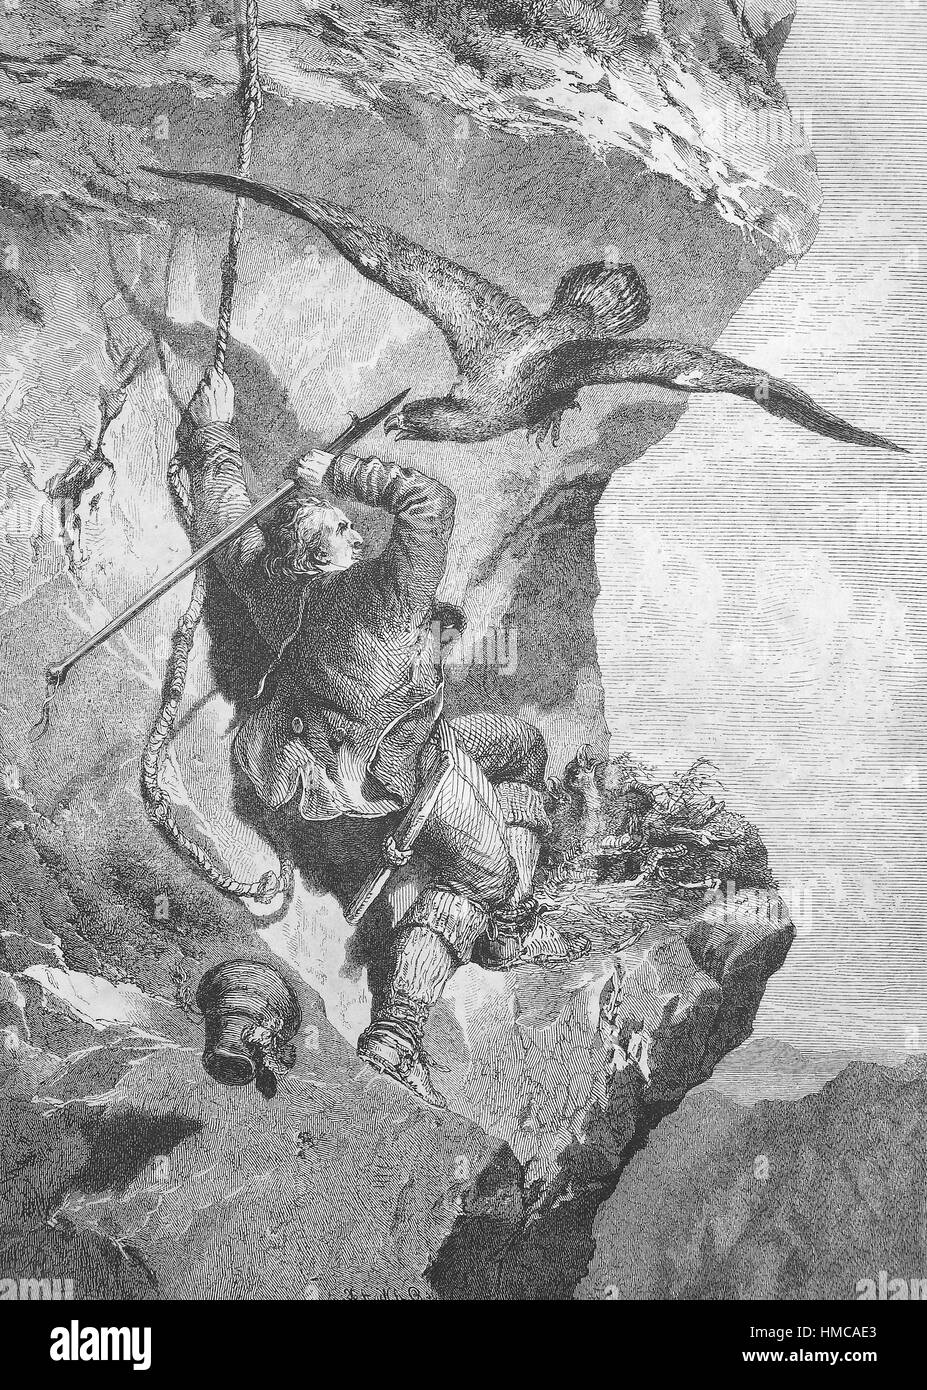 Mann will ein Adlernest plündern, der Adler greift ihn, Wilderer, Foto oder Illustration, veröffentlicht 1892, digital verbessert Stockfoto